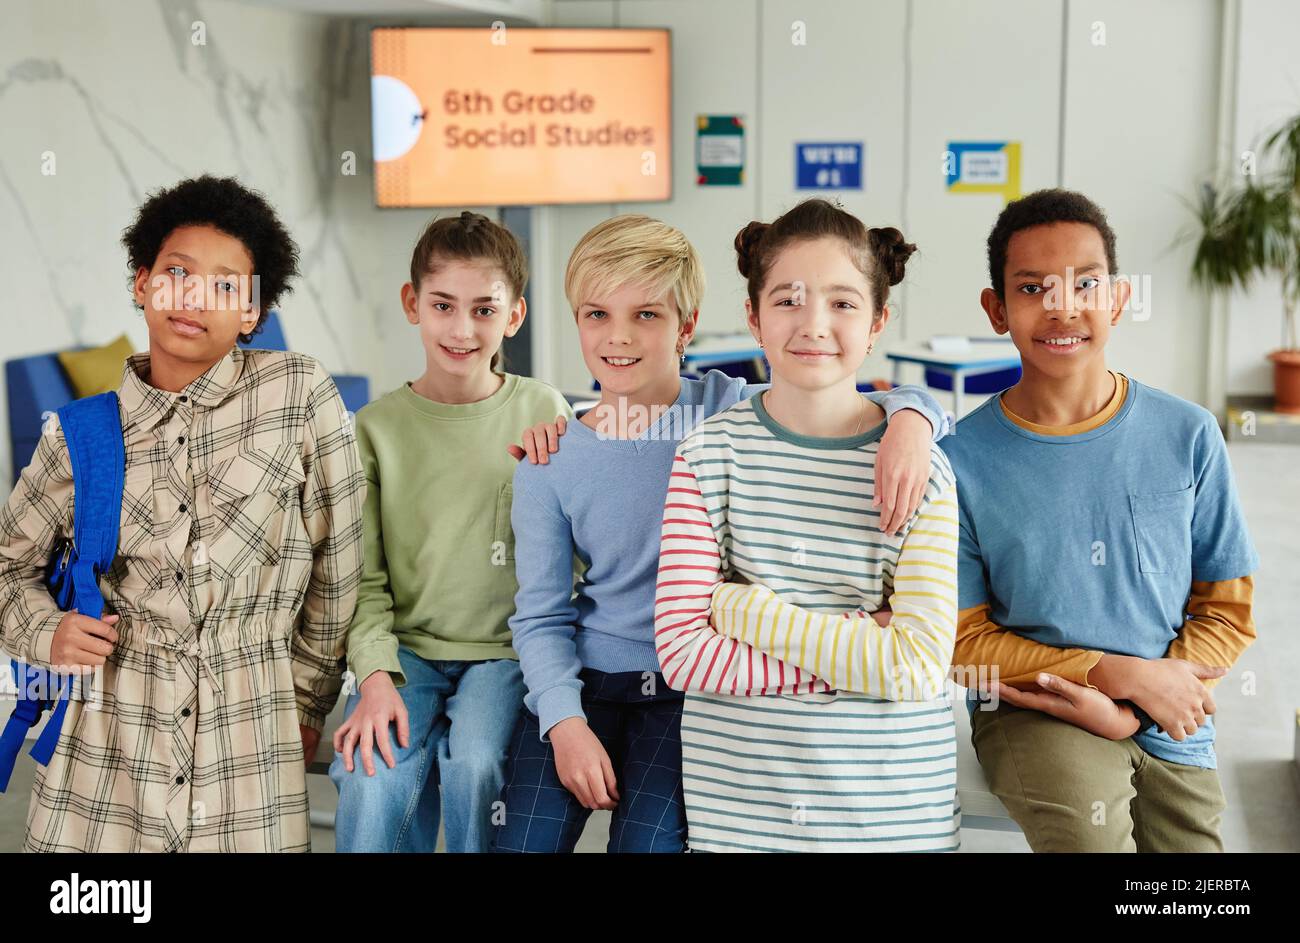 Porträt einer Gruppe von Kindern, die die Kamera angeschaut und lächelt, während sie im Klassenzimmer zusammen stehen Stockfoto